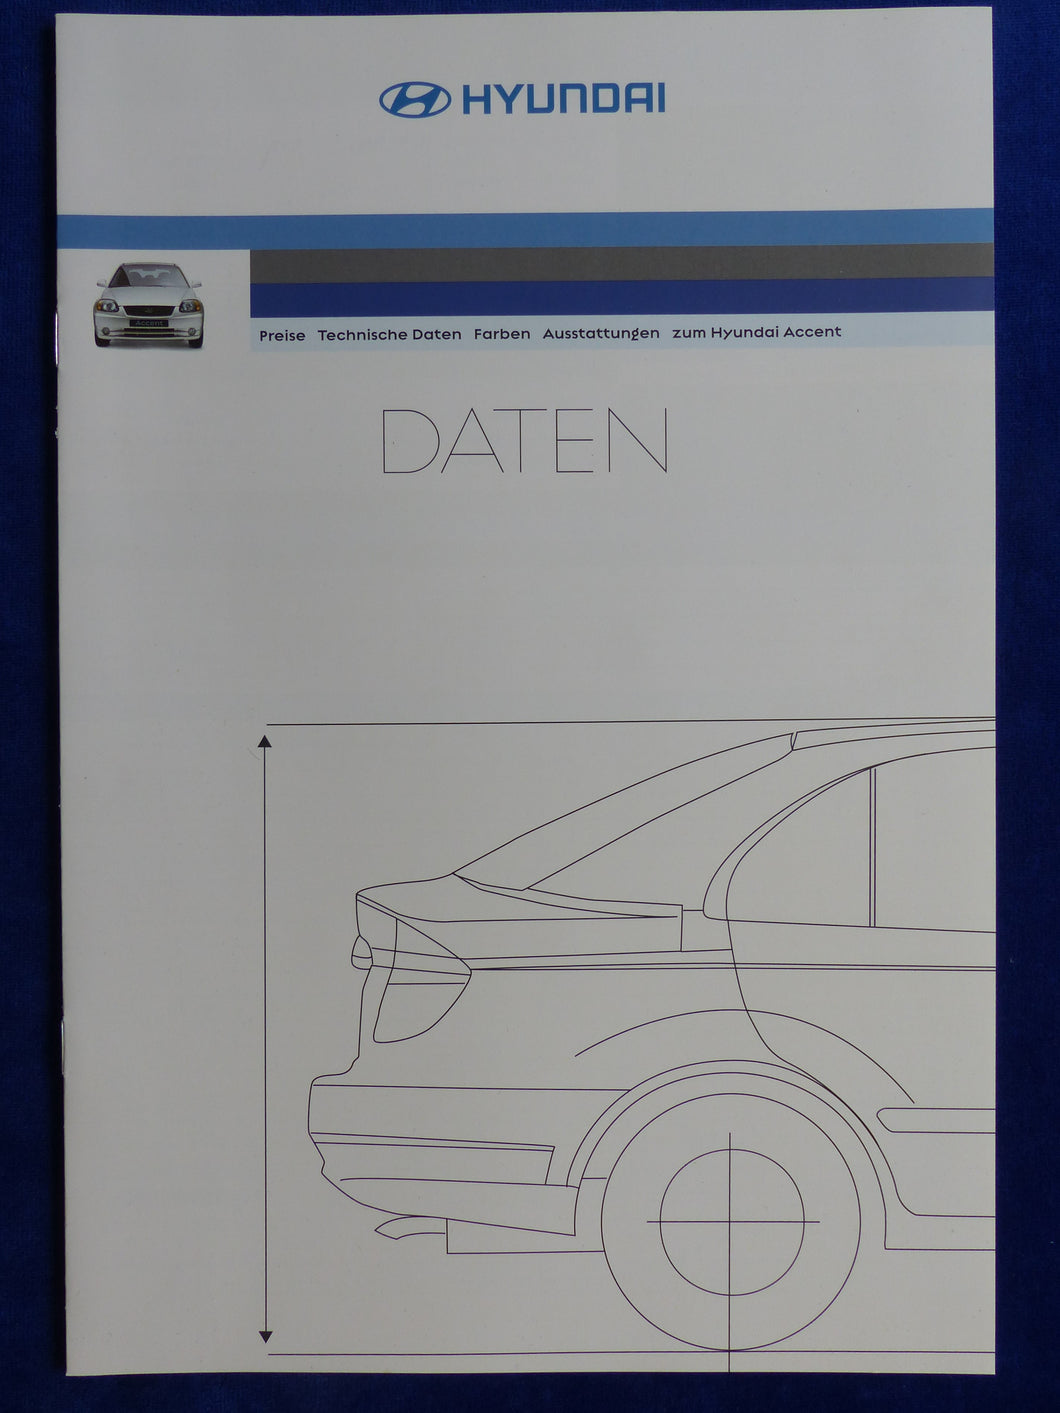 Hyundai Accent GLS - Preise Daten Ausstattungen - Prospekt Brochure 02.2003